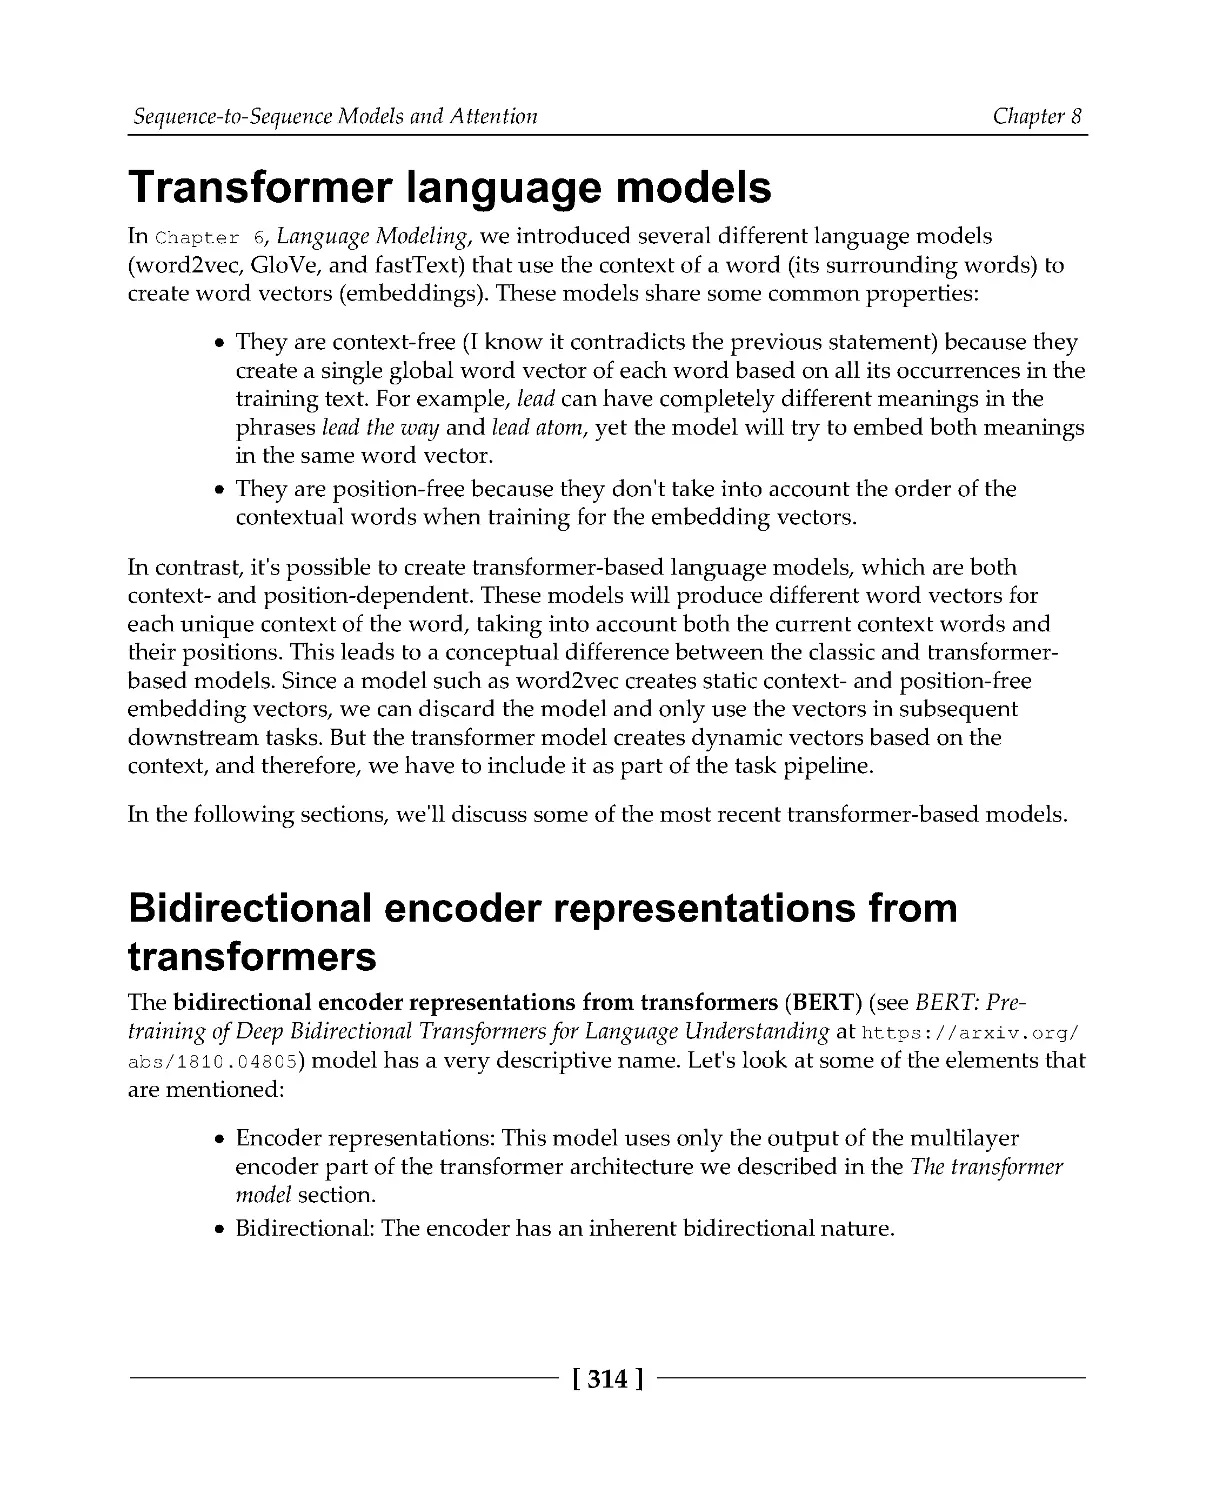 Transformer language models